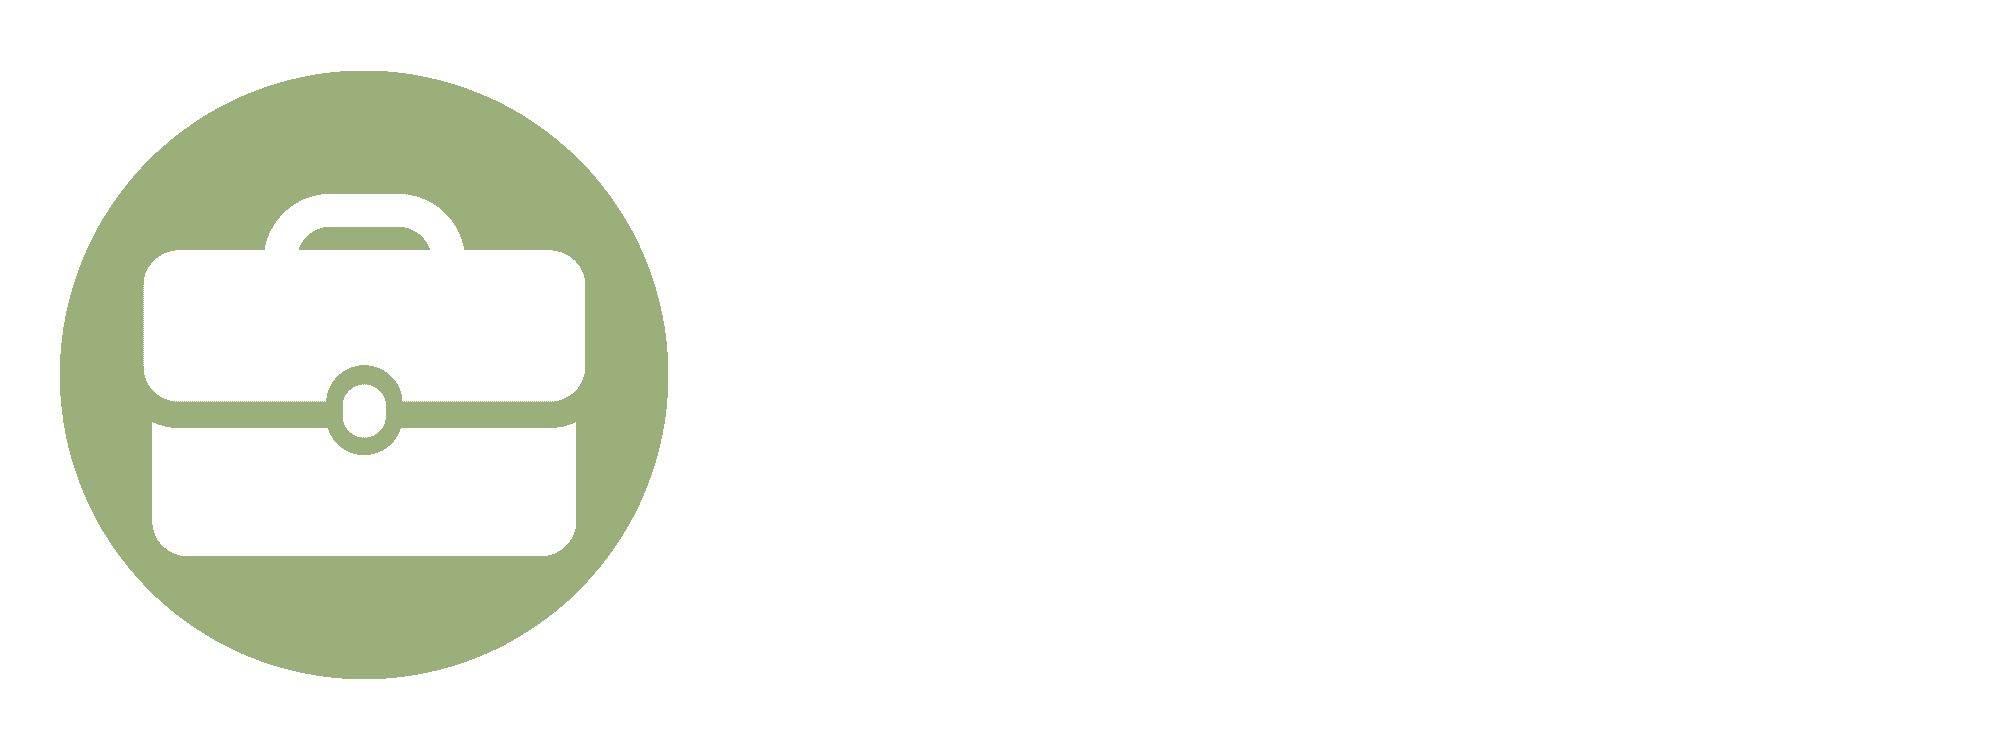 Briefcase Marketing Horizontal Logo v2